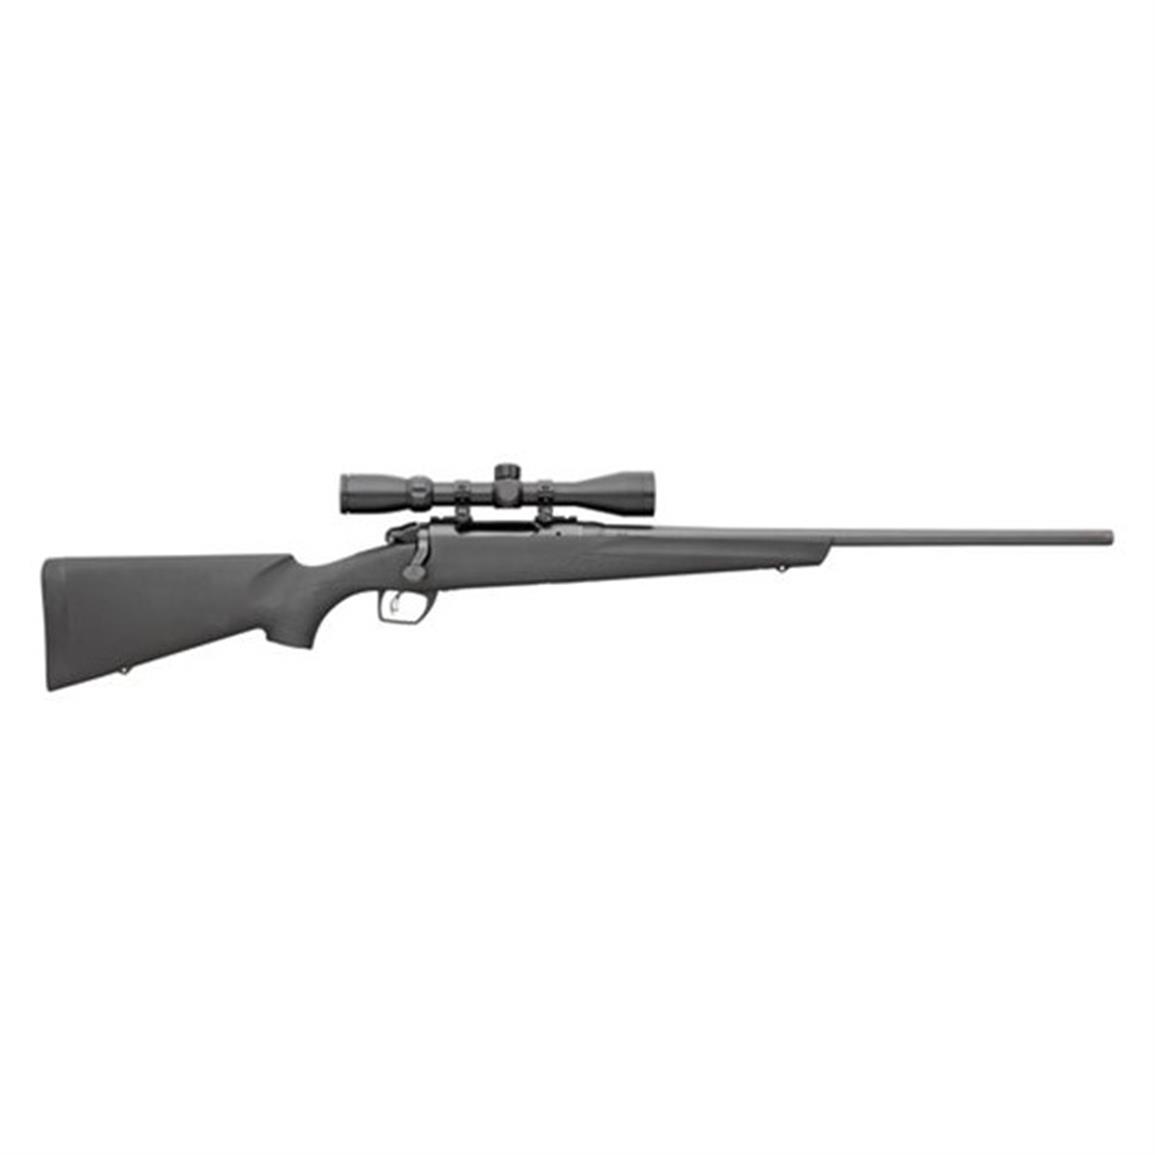 Remington 783, Bolt Action, .223 Remington, Centerfire, 85840, 47700858401, with 3-9x40mm Scope